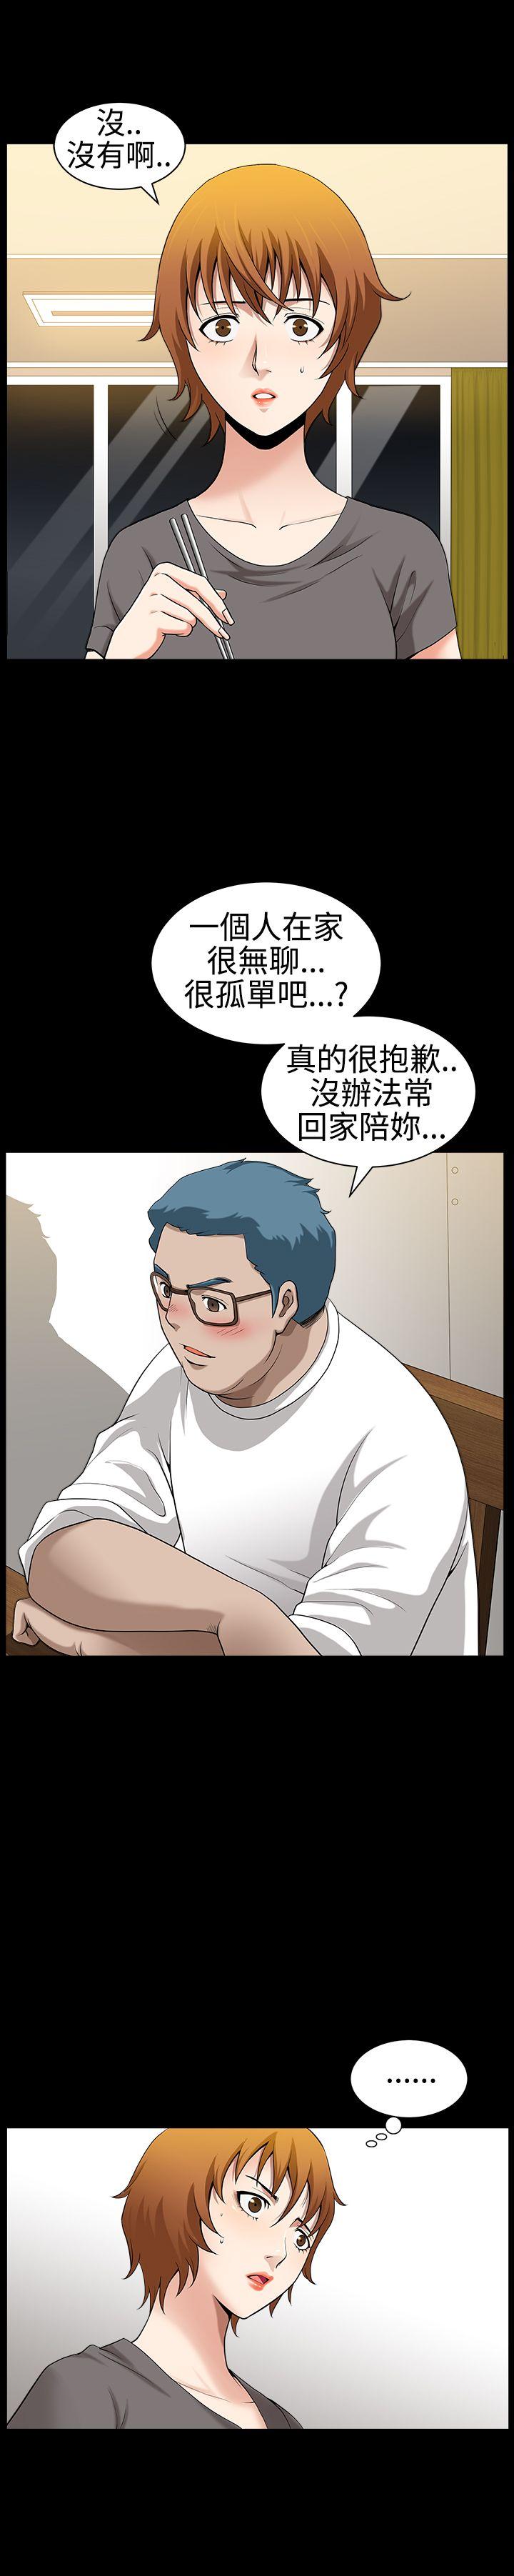 韩国污漫画 人妻性解放3:粗糙的手 第30话 5